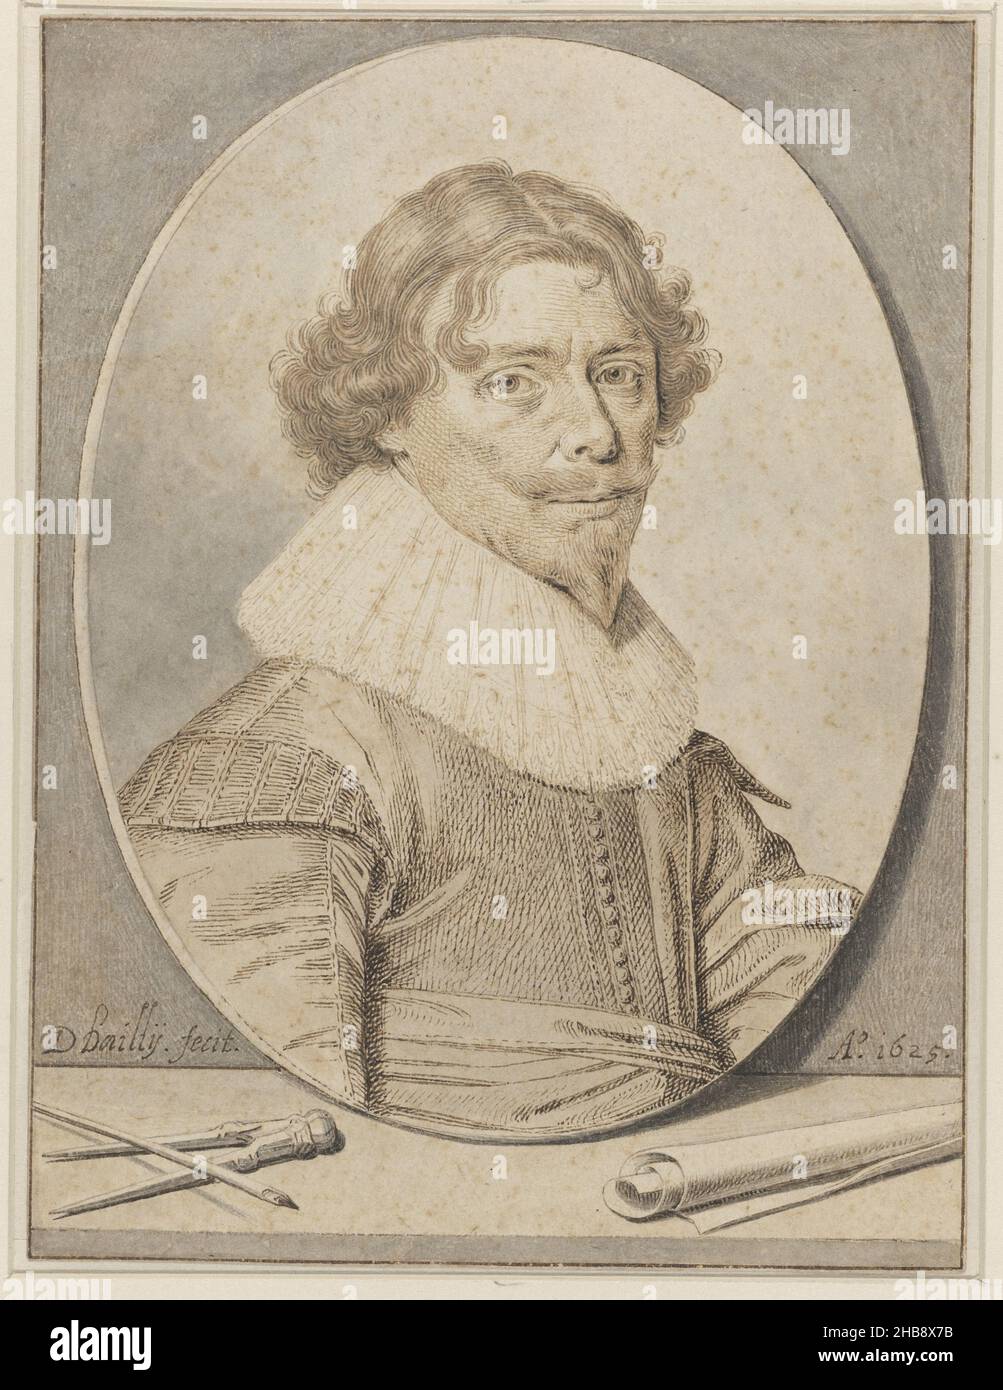 Autoportrait de David Bailly, dessinateur: David Bailly, 1625, papier, encre,stylo, pinceau, hauteur 182 mm × largeur 137 mm Banque D'Images